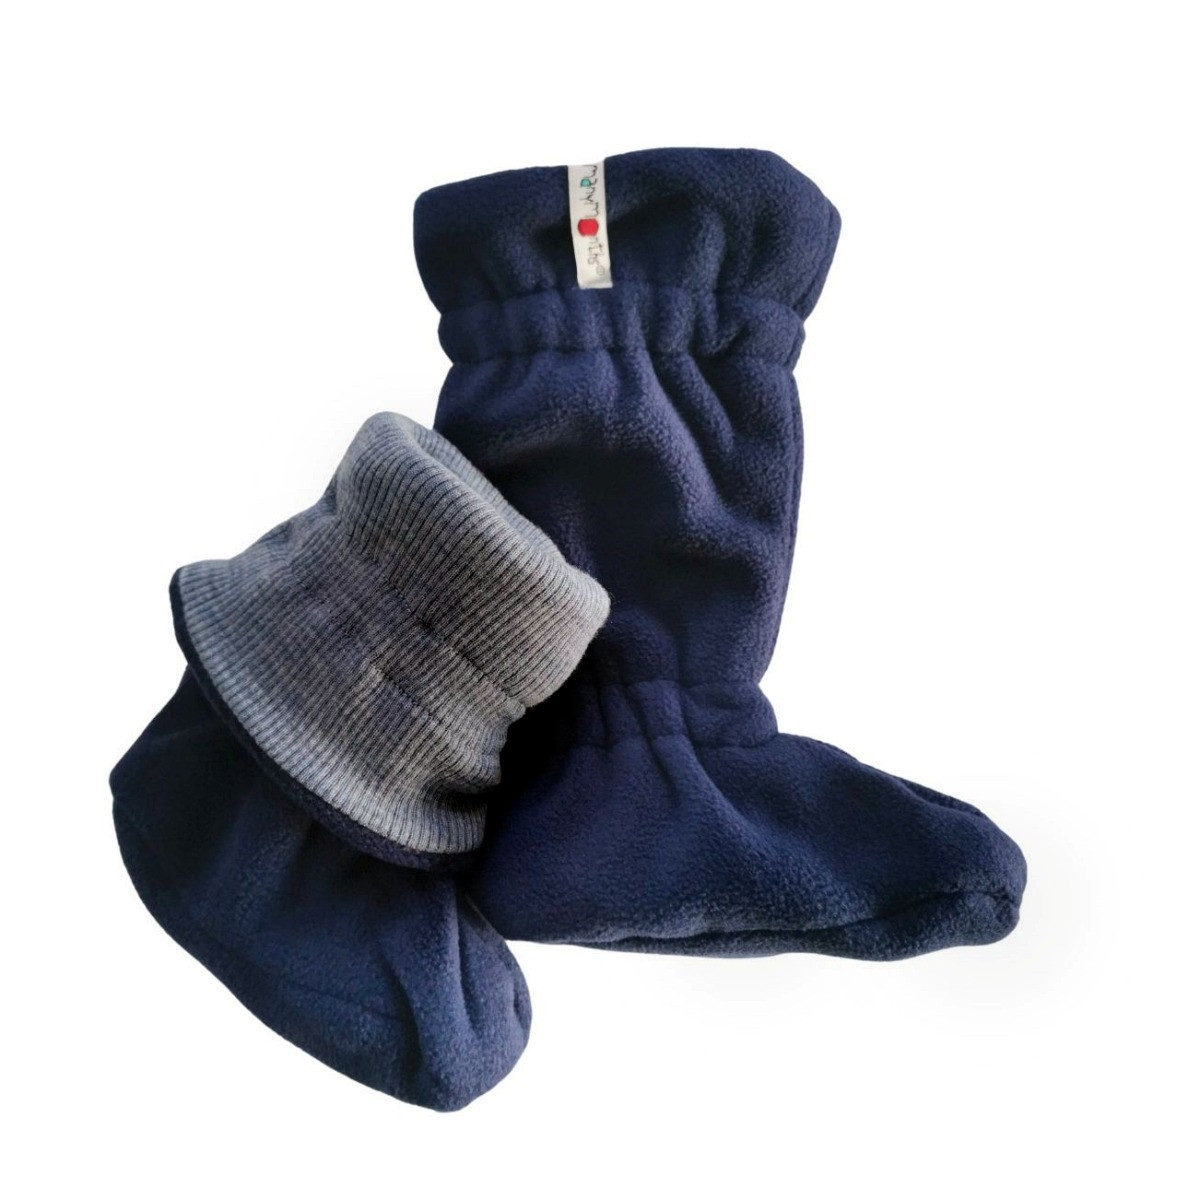 Chaussettes enfant laine polaire - Rouge et bleu | Doré Doré